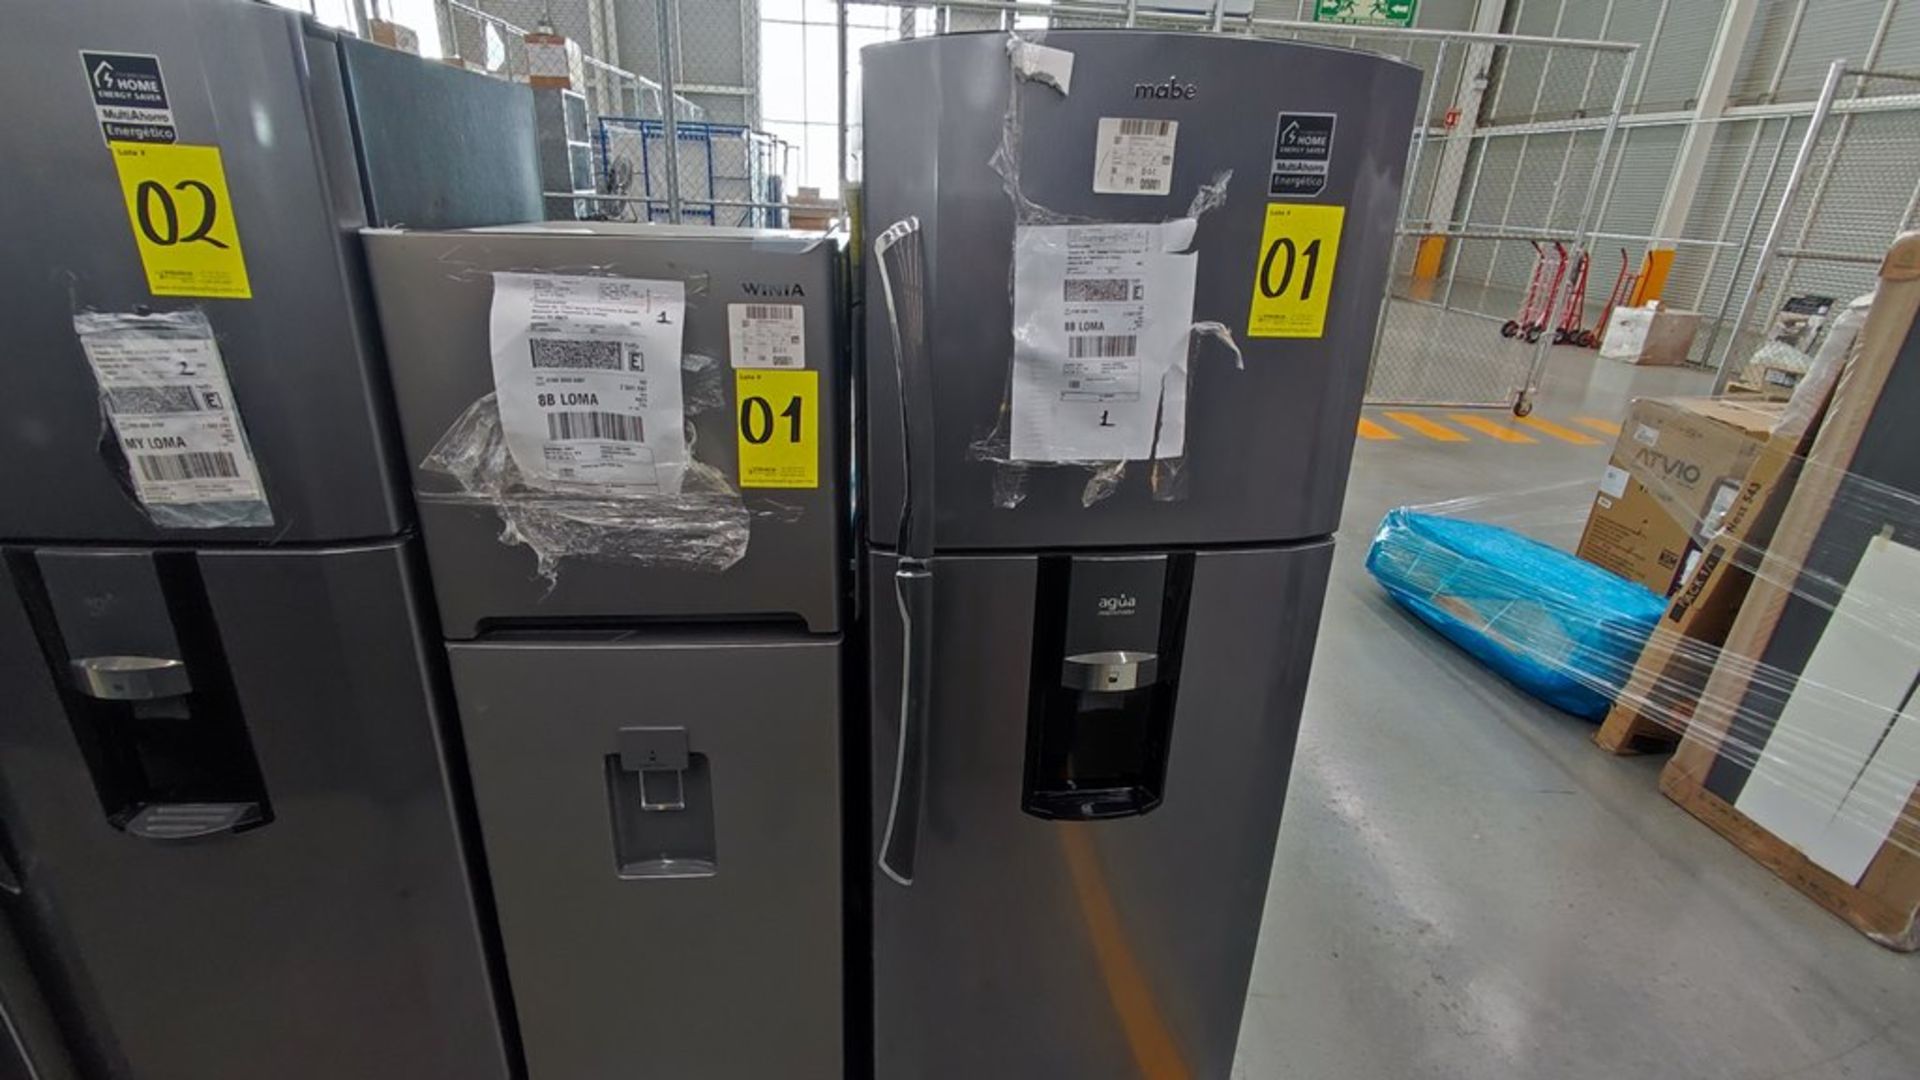 Lote de 2 refrigeradores contiene: 1 Refrigerador Marca Mabe, Modelo RMT400RY, No de serie 2202B401